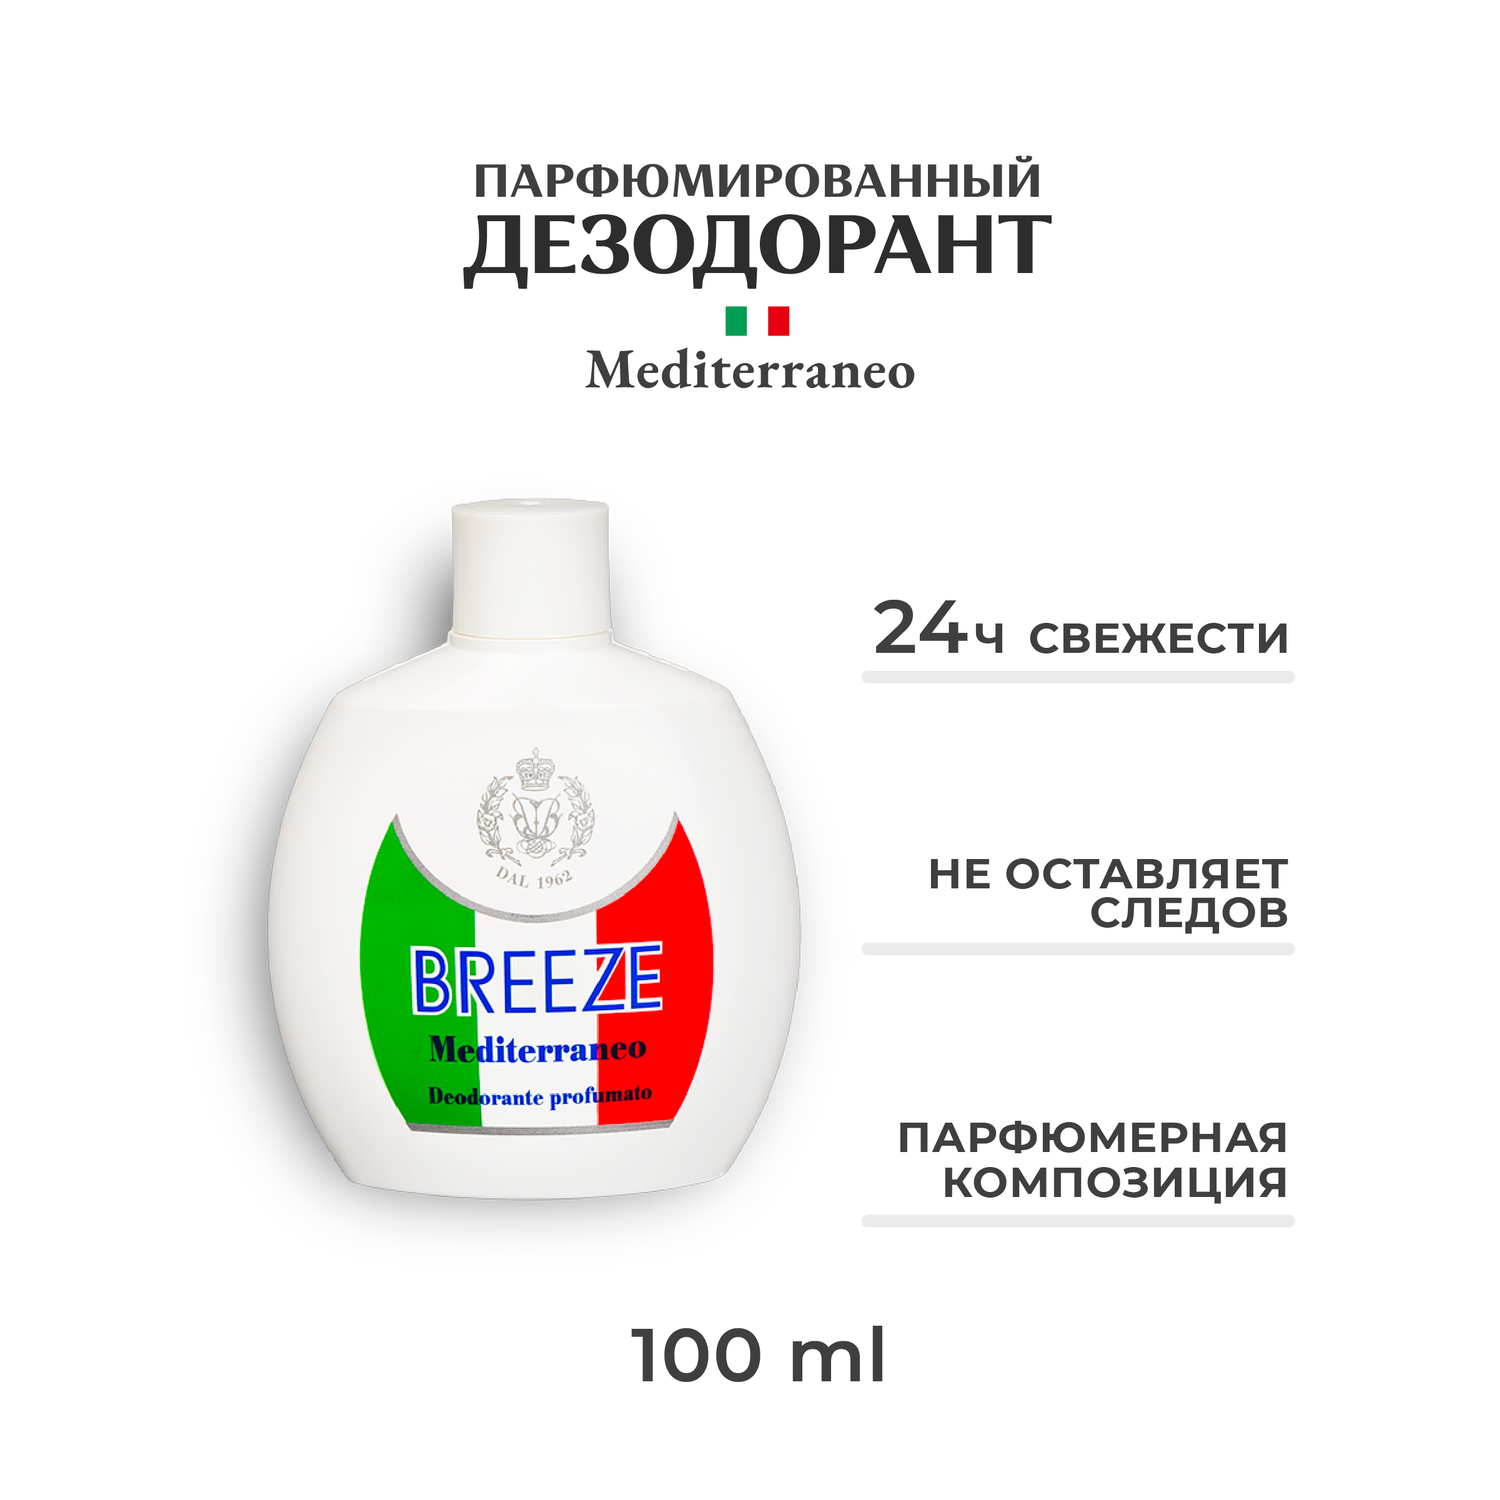 Парфюмированный дезодорант BREEZE mediterraneo 100 мл - фото 1